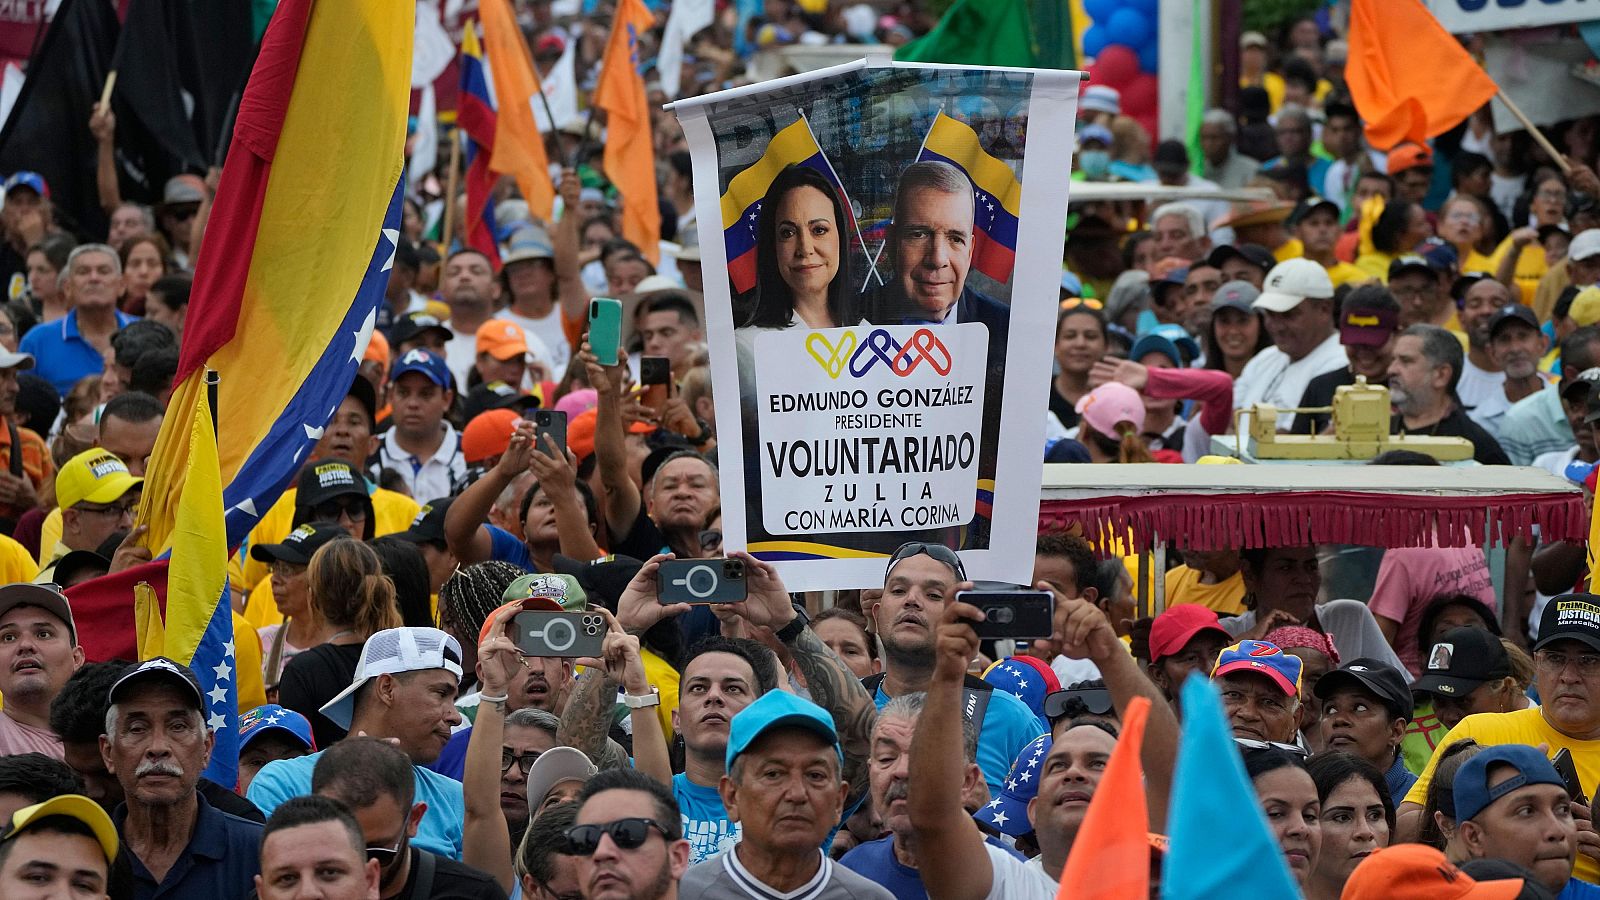 Arranca la campaña para elegir presidente en Venezuela con la oposición llamando a acudir a las urnas masivamente